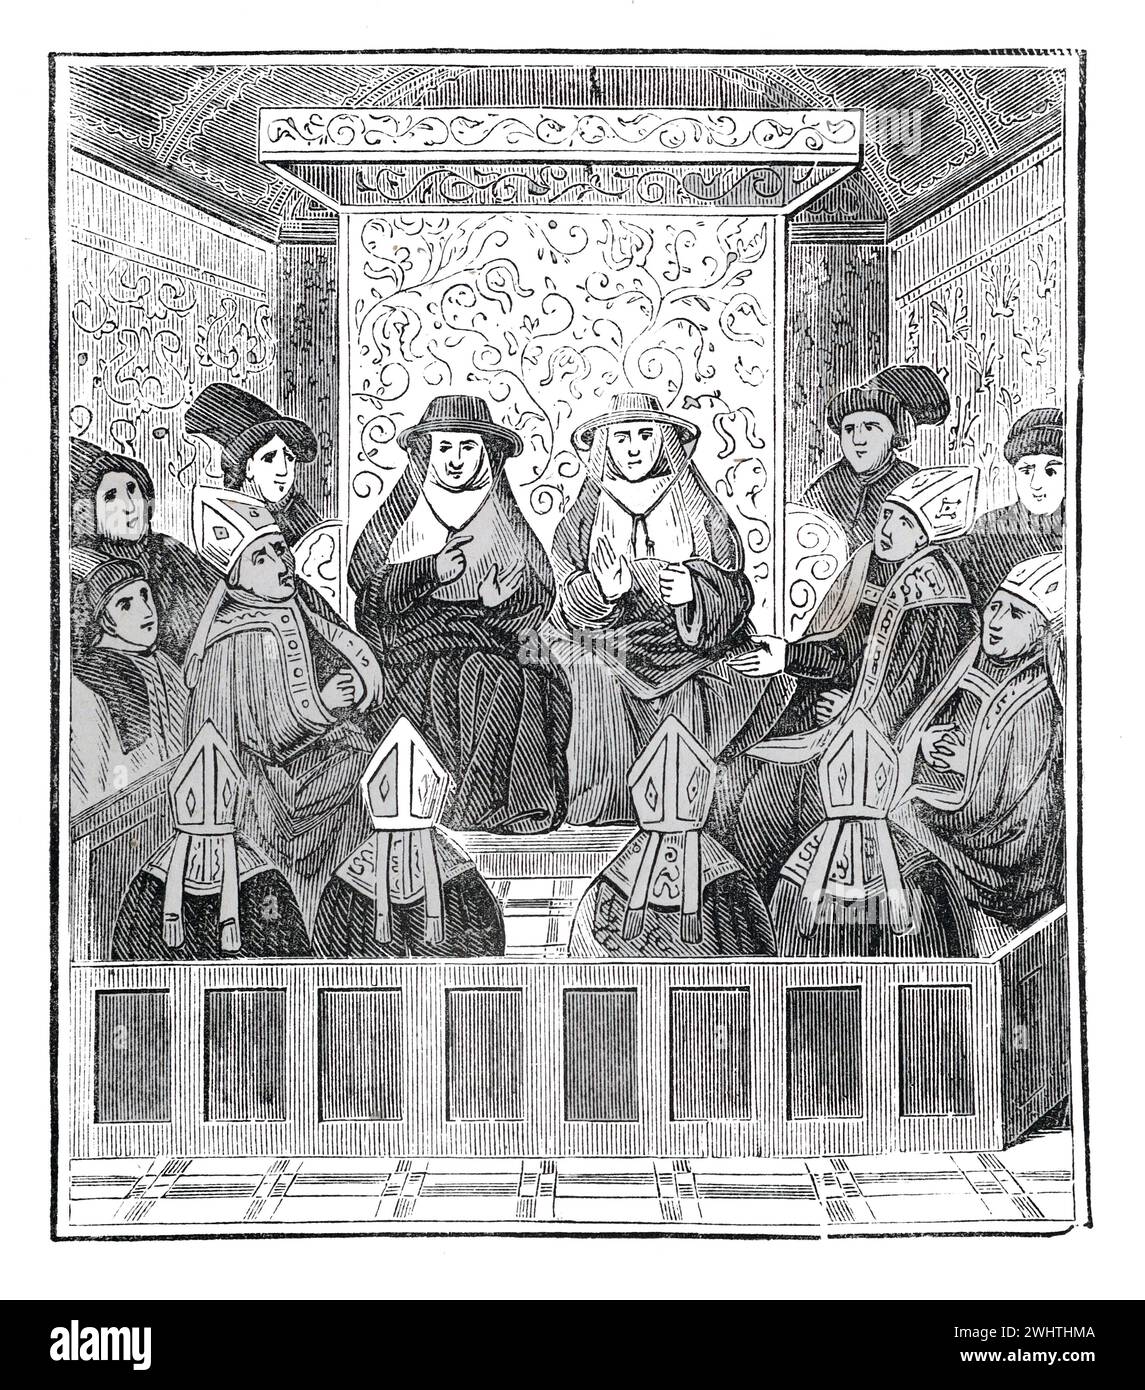 Convocatoria del Clero Medieval en Inglaterra del siglo XV. Ilustración en blanco y negro de la "vieja Inglaterra" publicada por James Sangster en 1860. Foto de stock